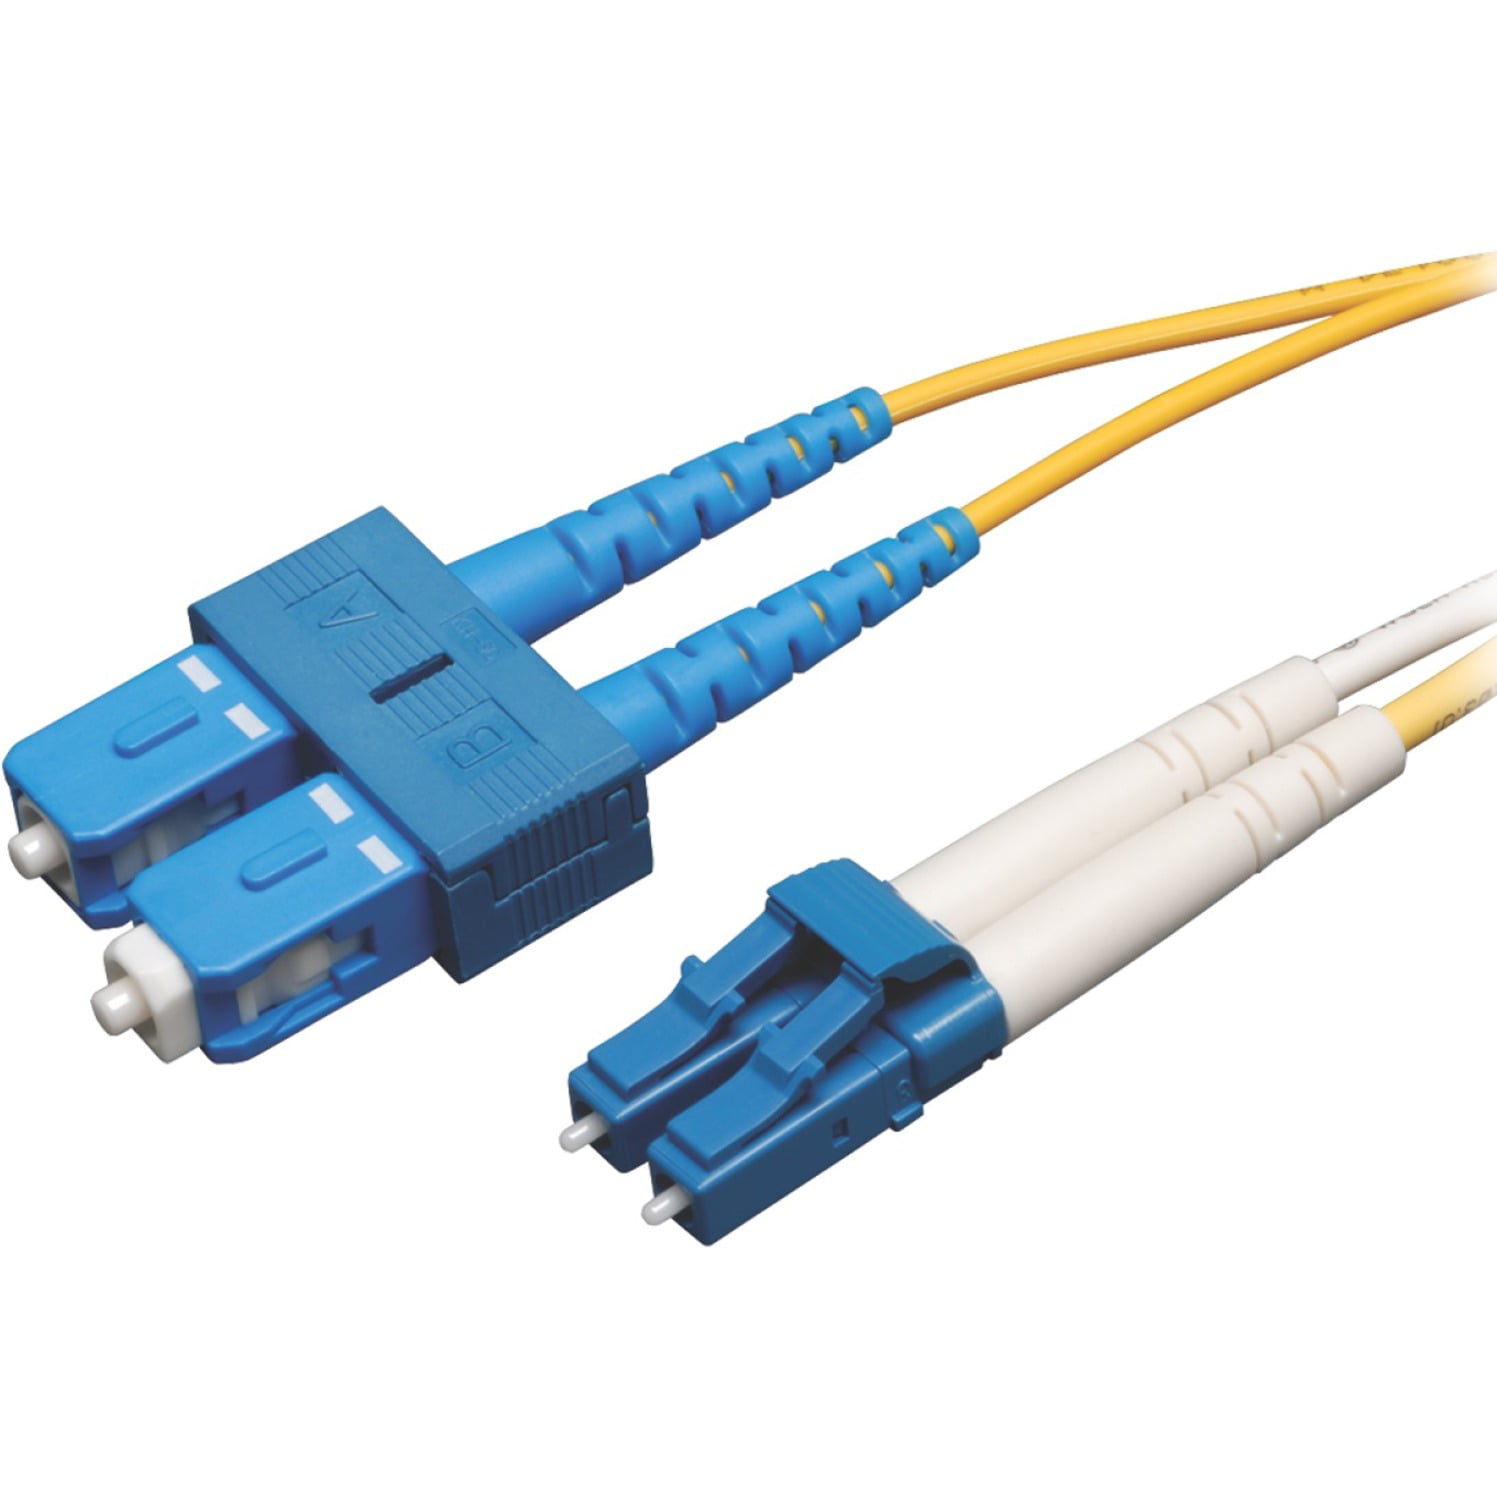 SC/APC LC/APC 9/125 Singlemode Duplex Fiber Jumper Zipcord Cable 30M